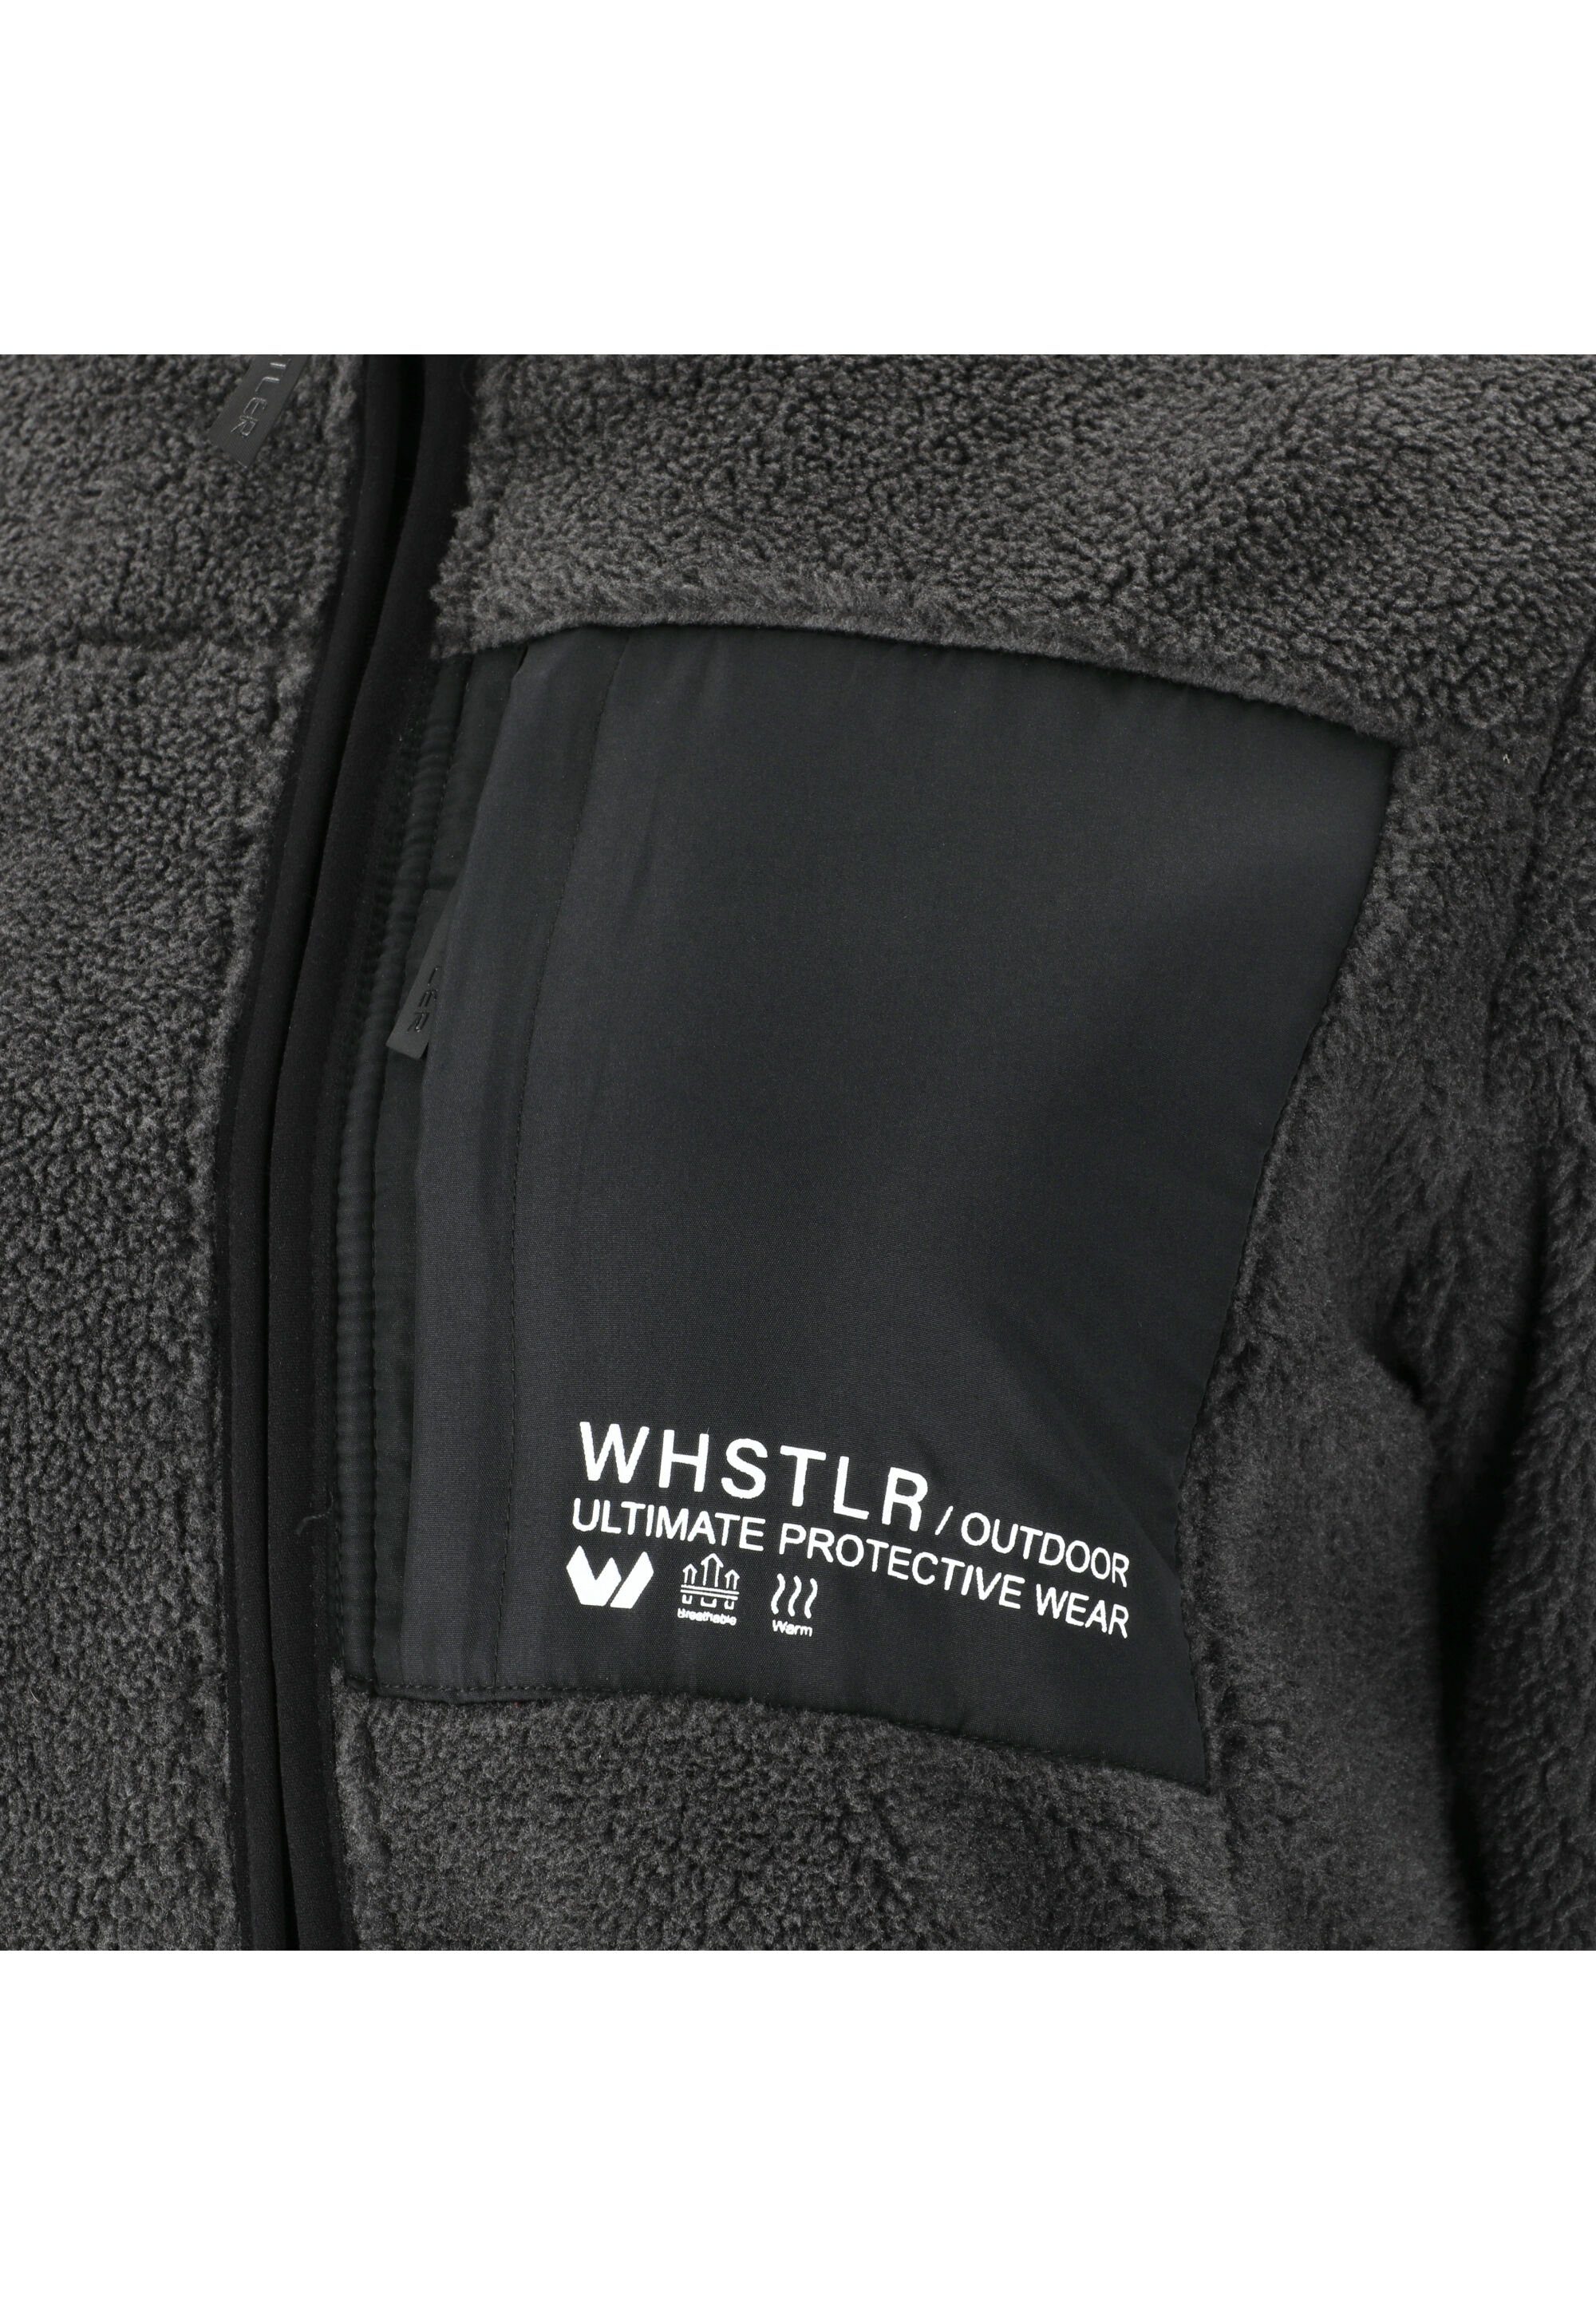 Kontrast-Brusttasche Sprocket mit WHISTLER schwarz Fleecejacke